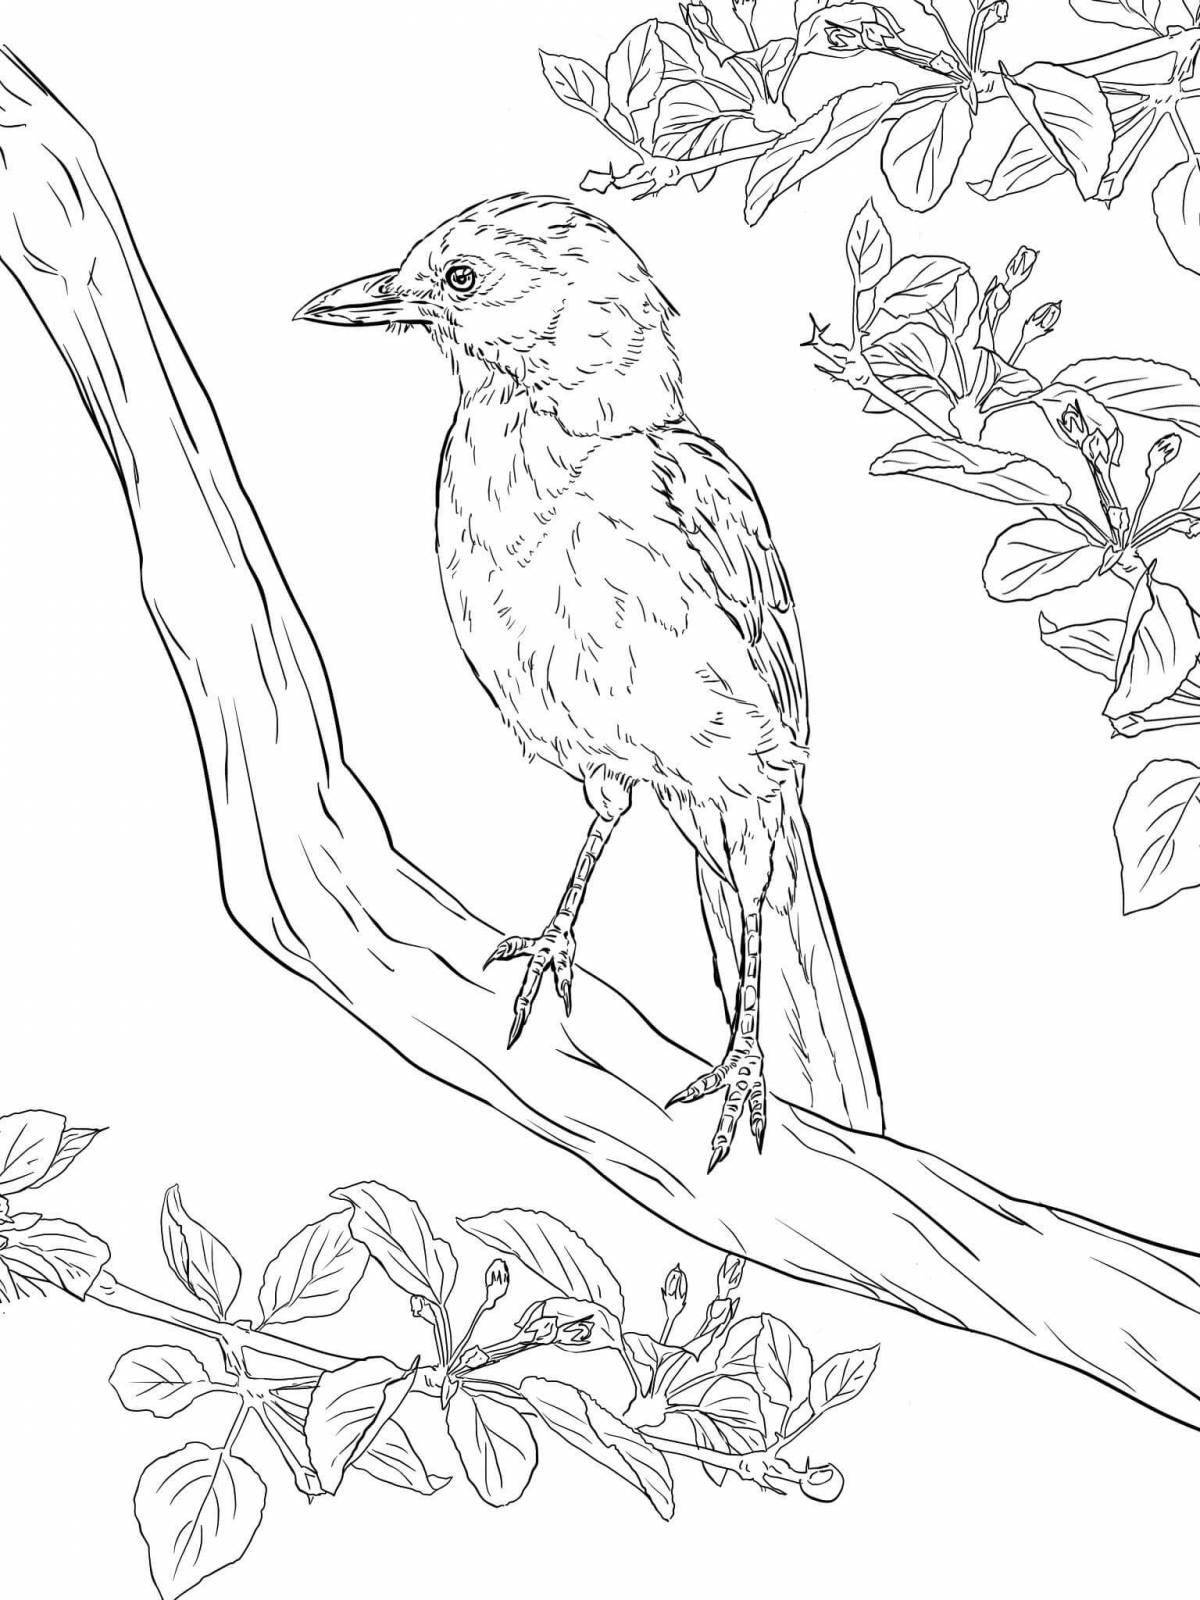 Раскраски Раскраска Свиристель птицы, скачать распечатать раскраски.